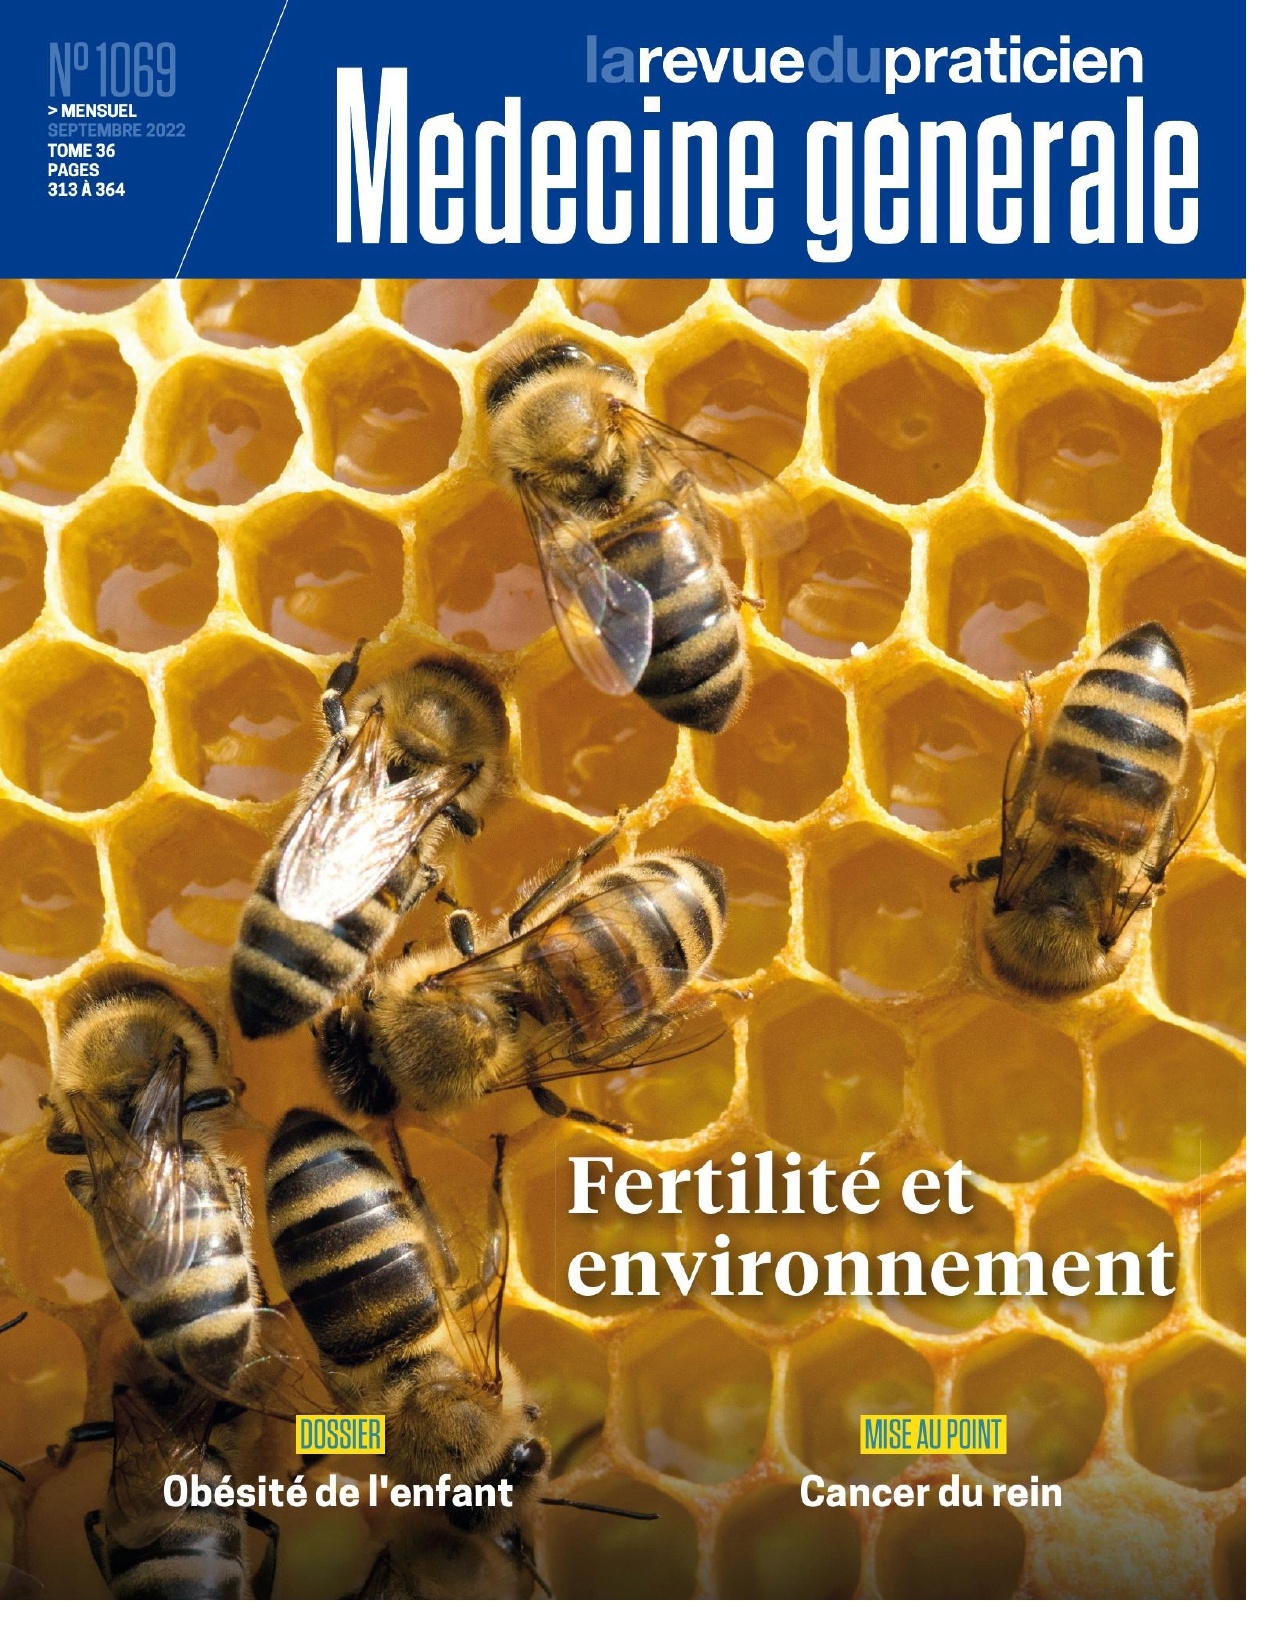 La Revue du Praticien Médecine Générale n°1069  septembre2022 pdf gratuit   1-copy10